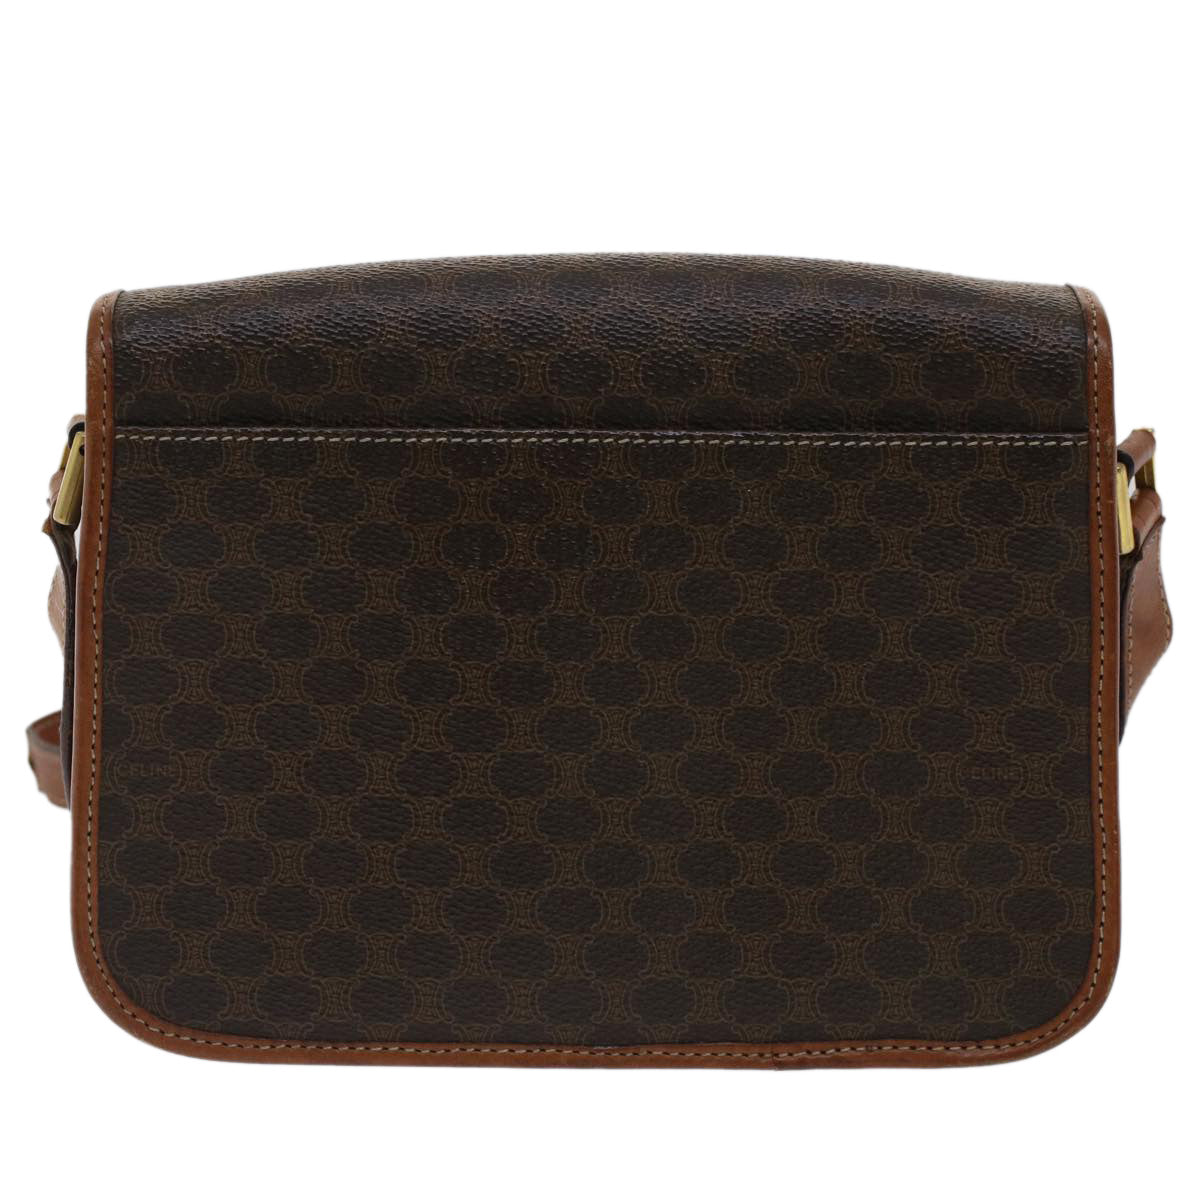 CELINE Macadam Canvas Shoulder Bag PVC Leather Brown Auth 50775 - 0